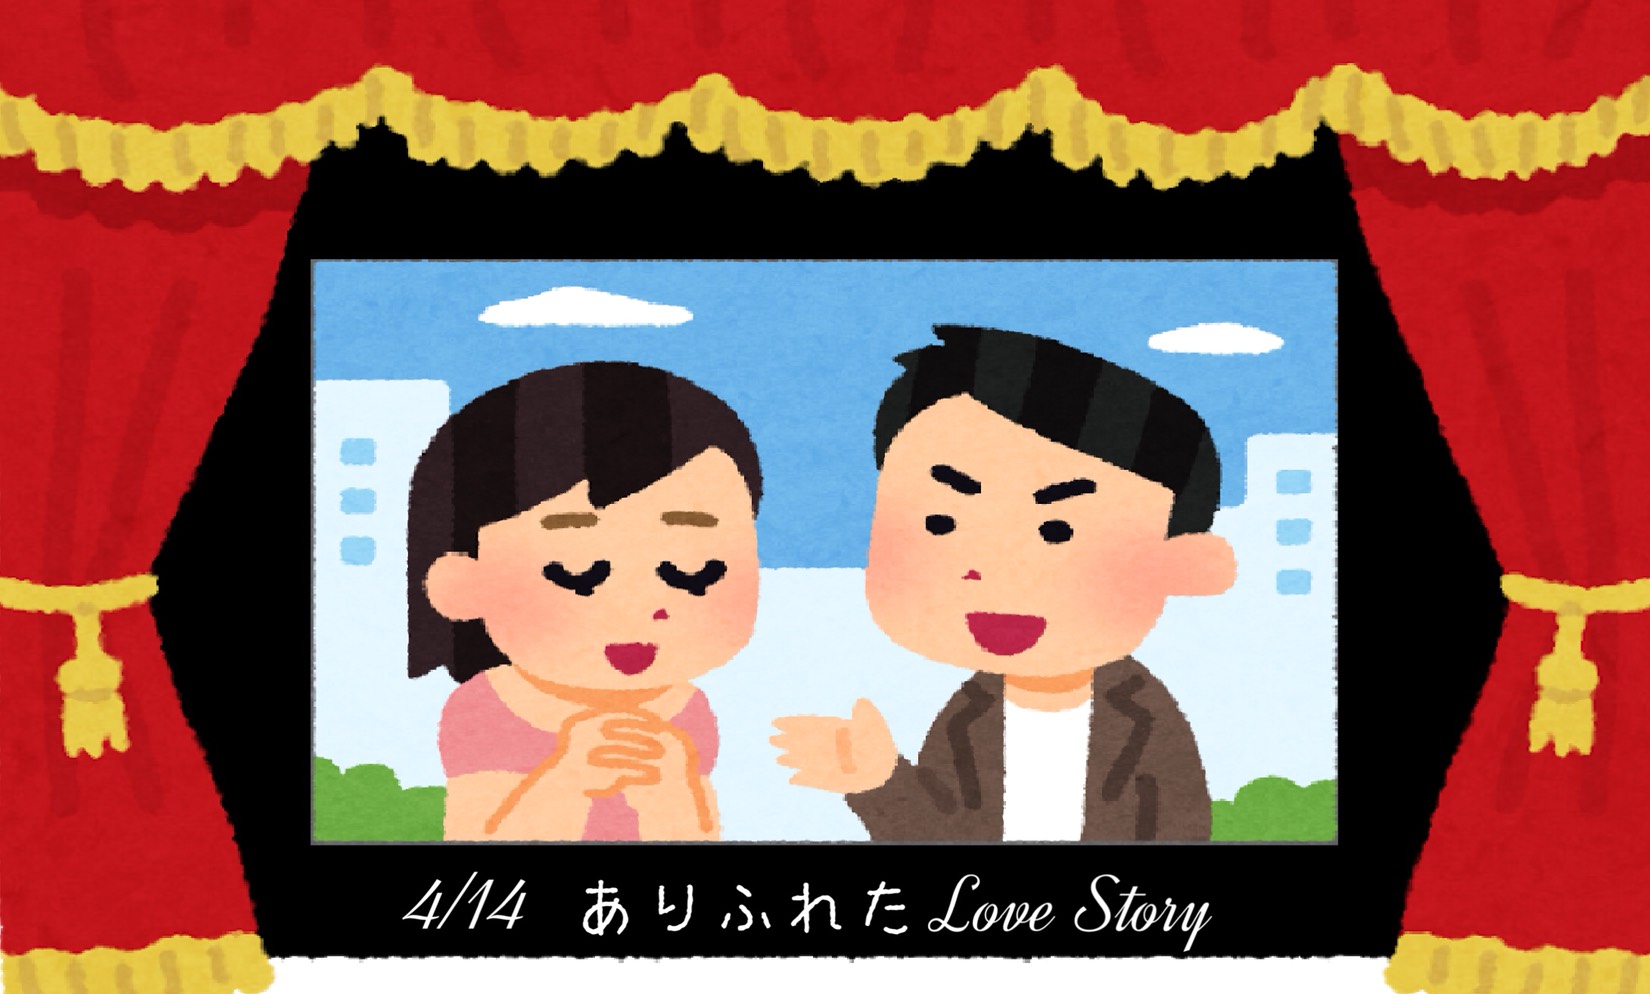 「ありふれた Love Story 〜男女問題はいつも面倒だ〜」のイメージ